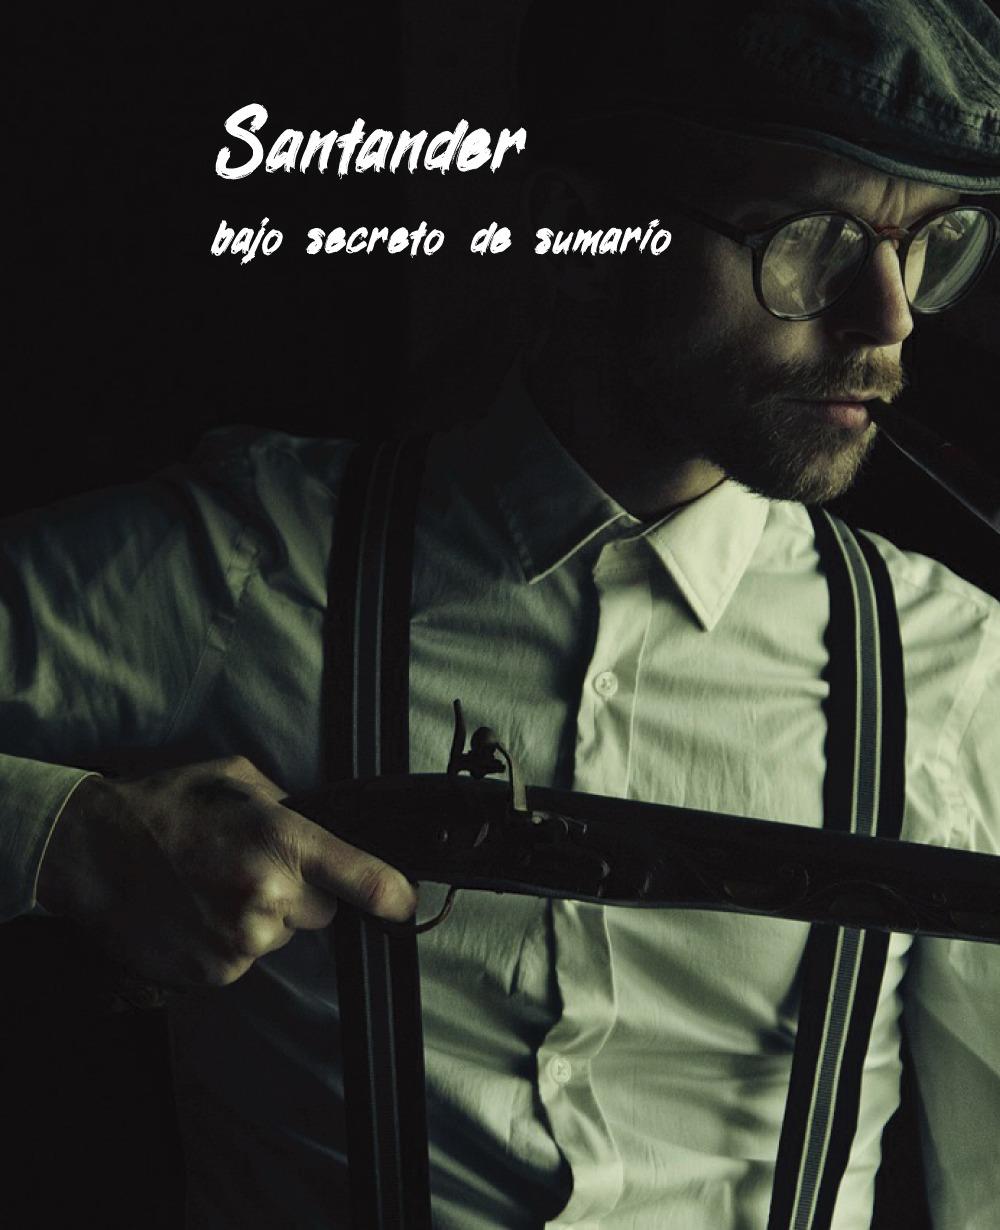 Tour-de-los-crimenes-y-misterios-de-Santander-1